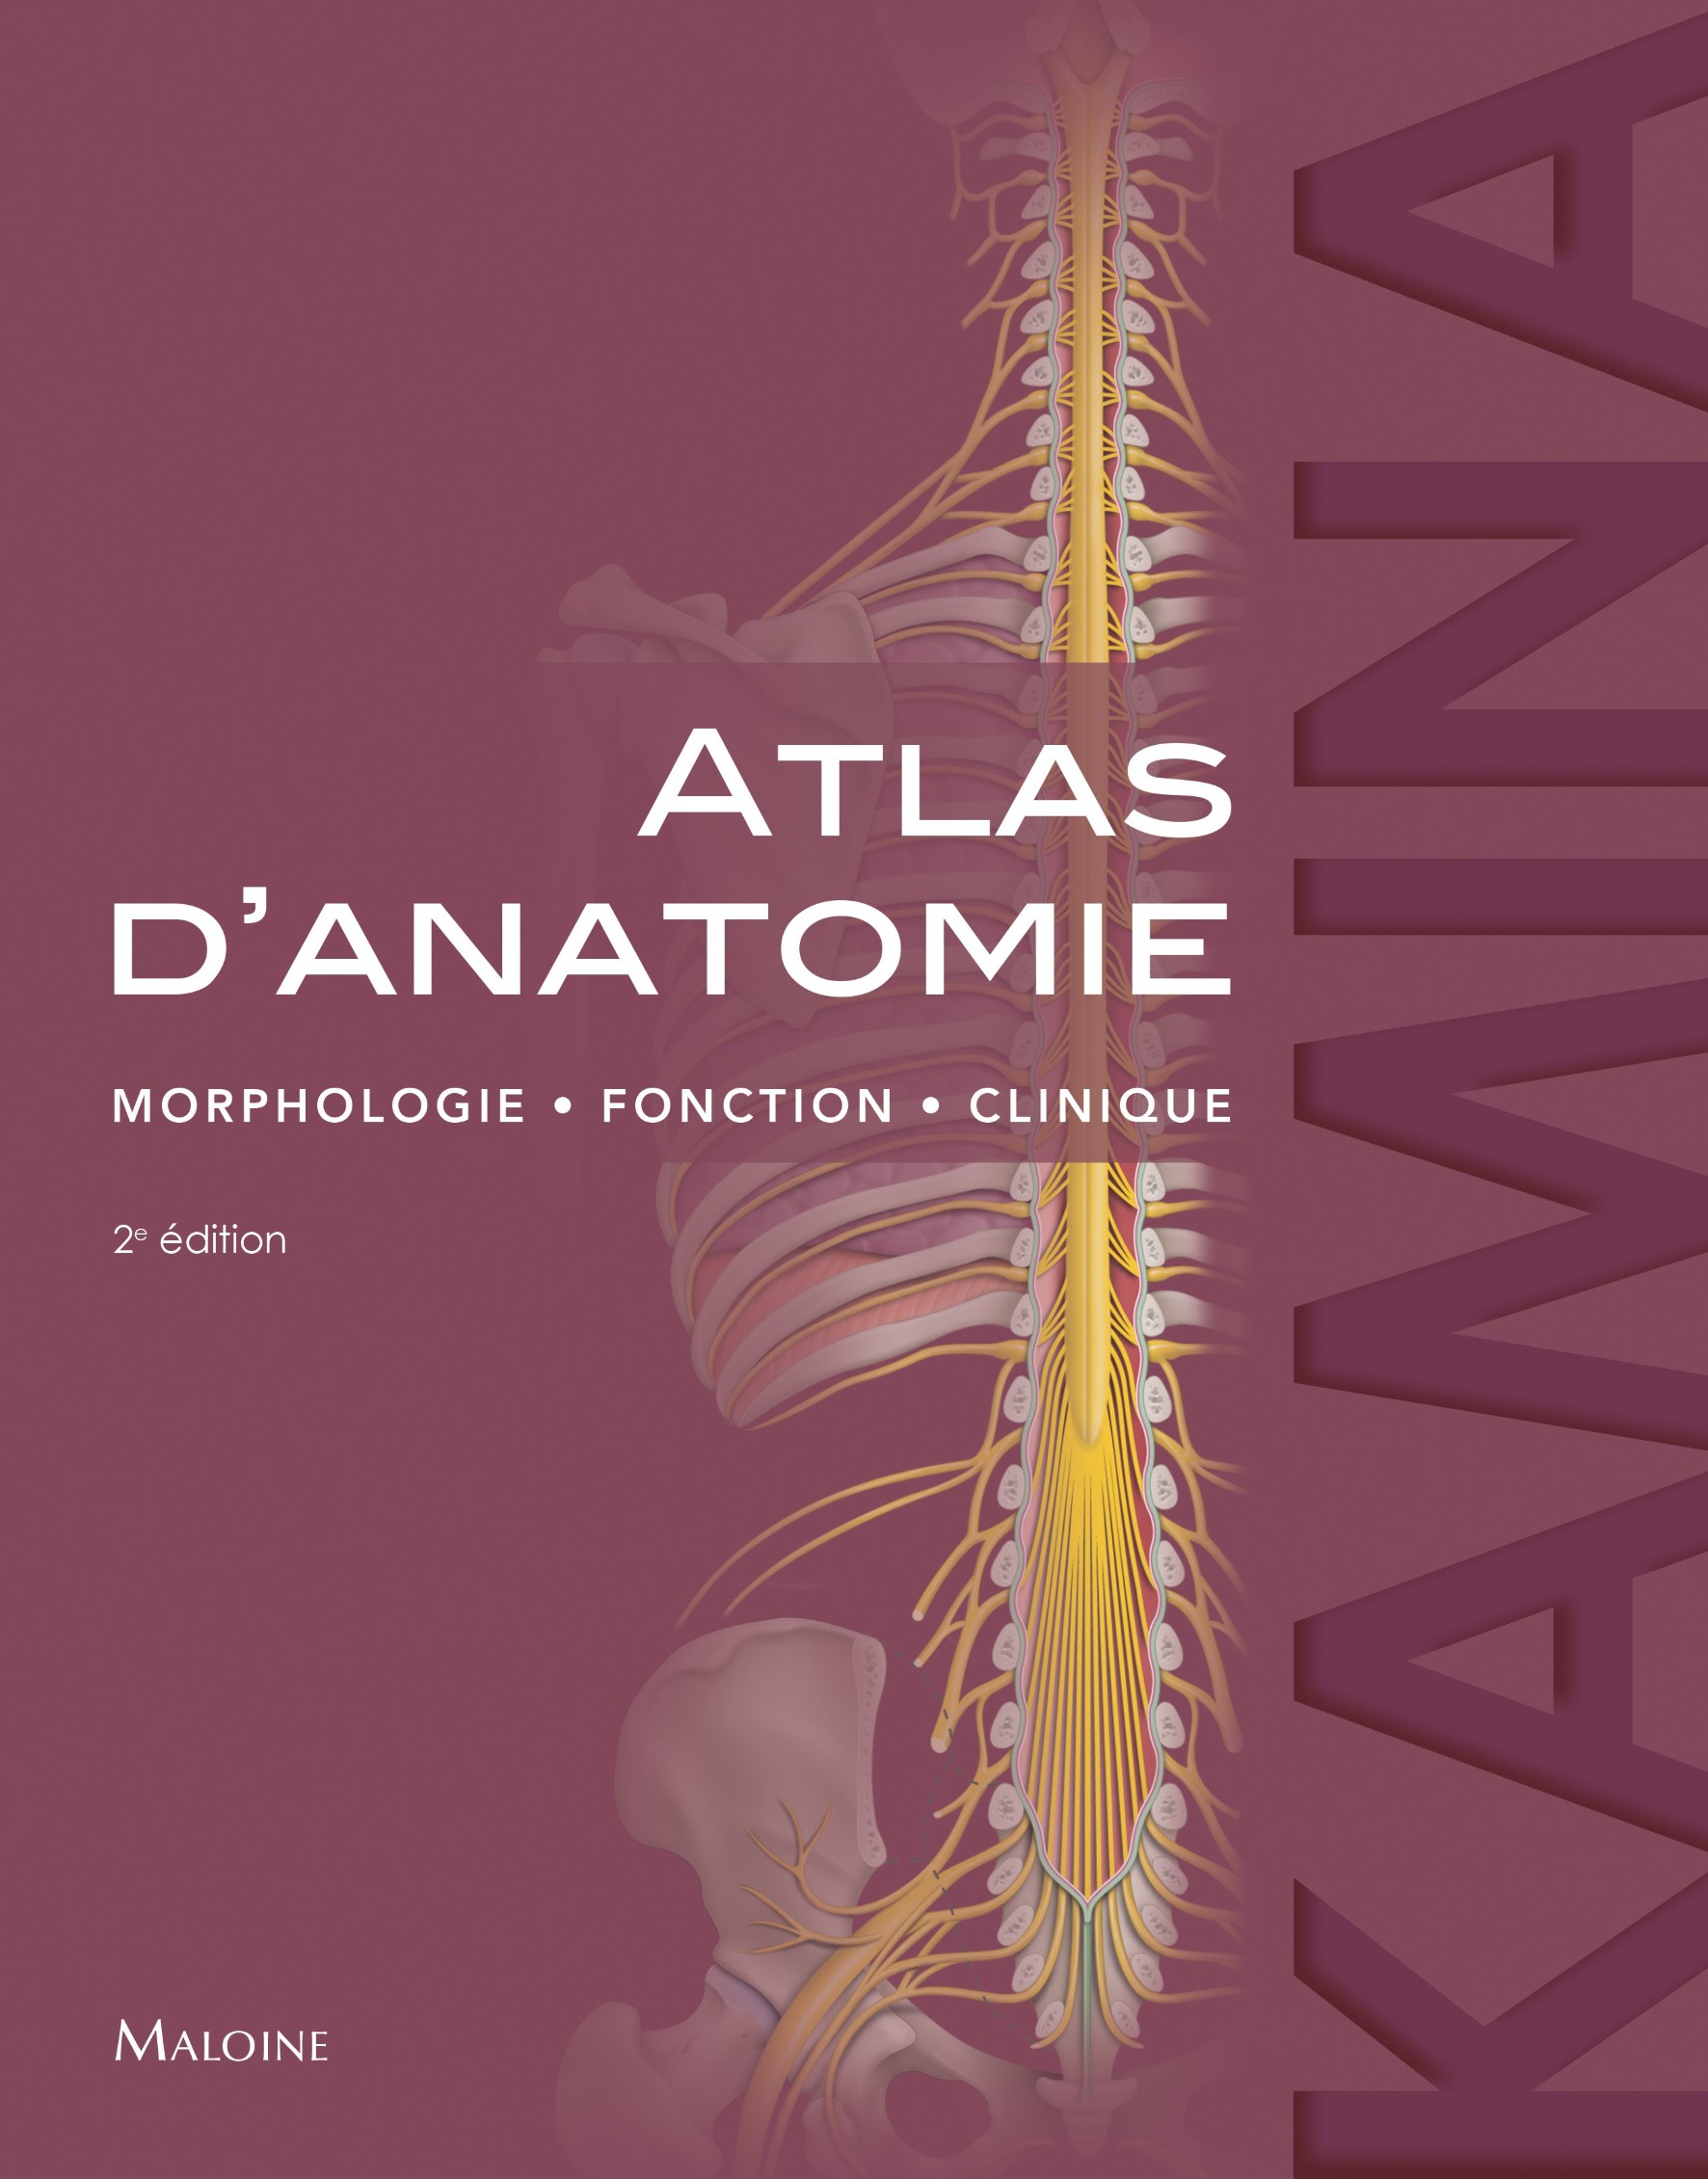 Image Atlas d'anatomie : morphologie, fonction, clinique, 2e édition